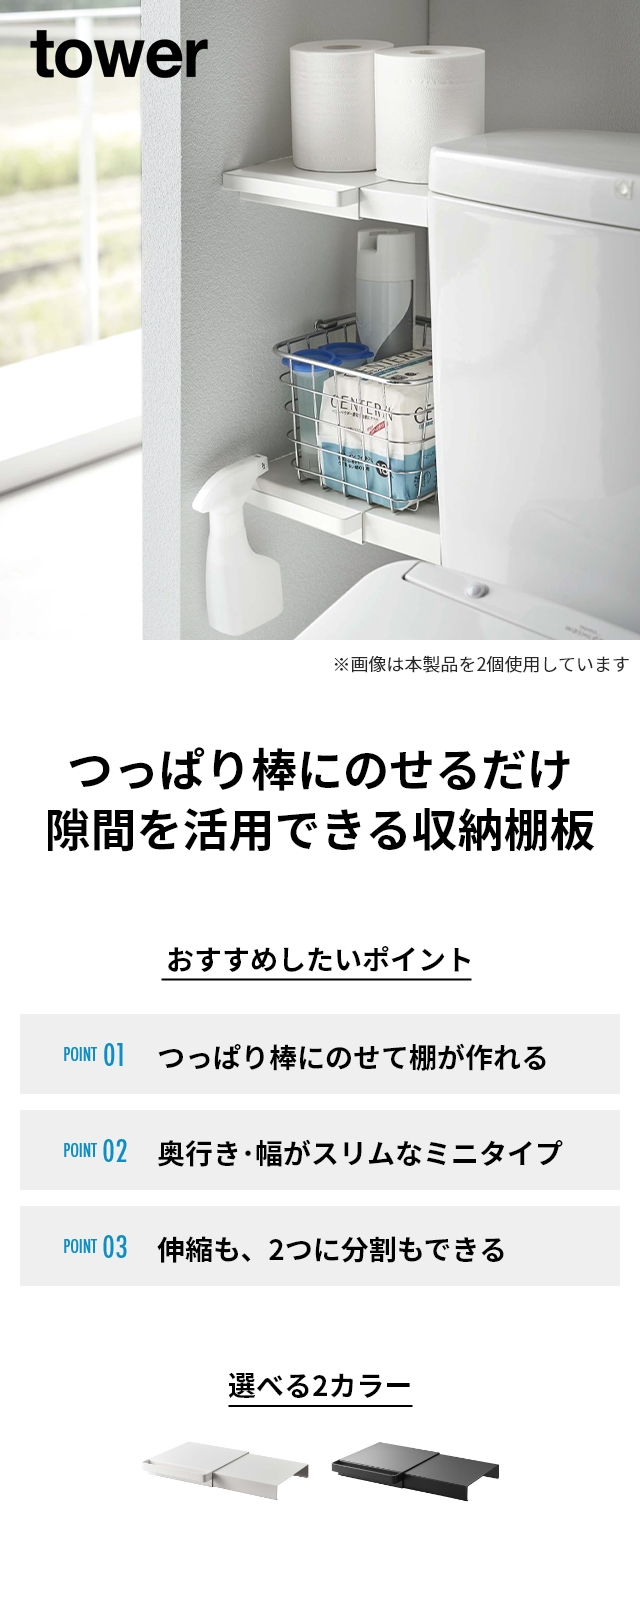 山崎実業 タワー 棚 トイレ 伸縮つっぱり棒用棚板 ミニ 6021